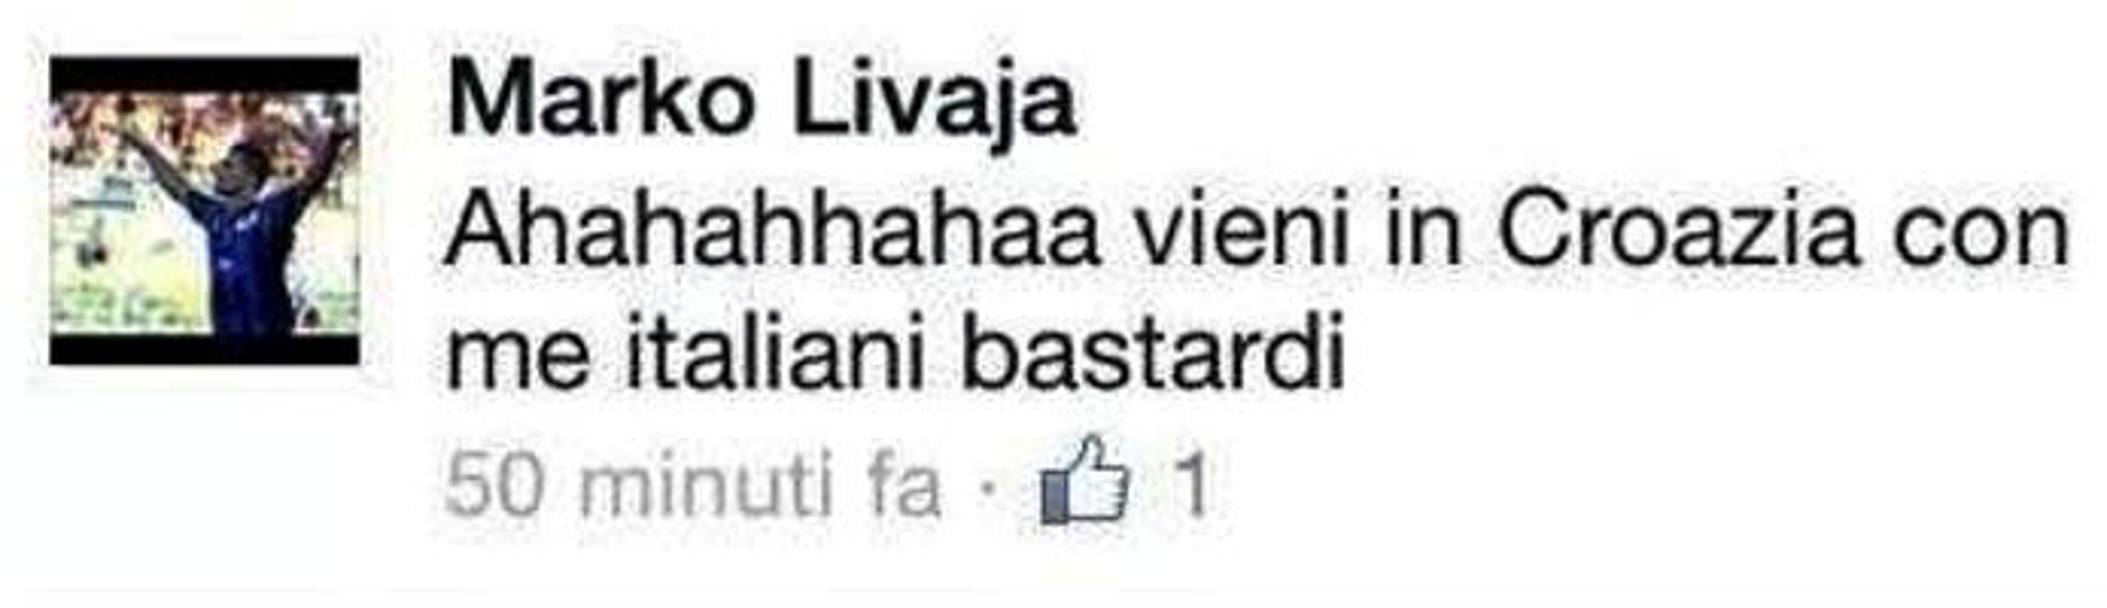 Questa la reazione di Livaja su Facebook nei giorni successivi: l’Atalanta lo sospender. 